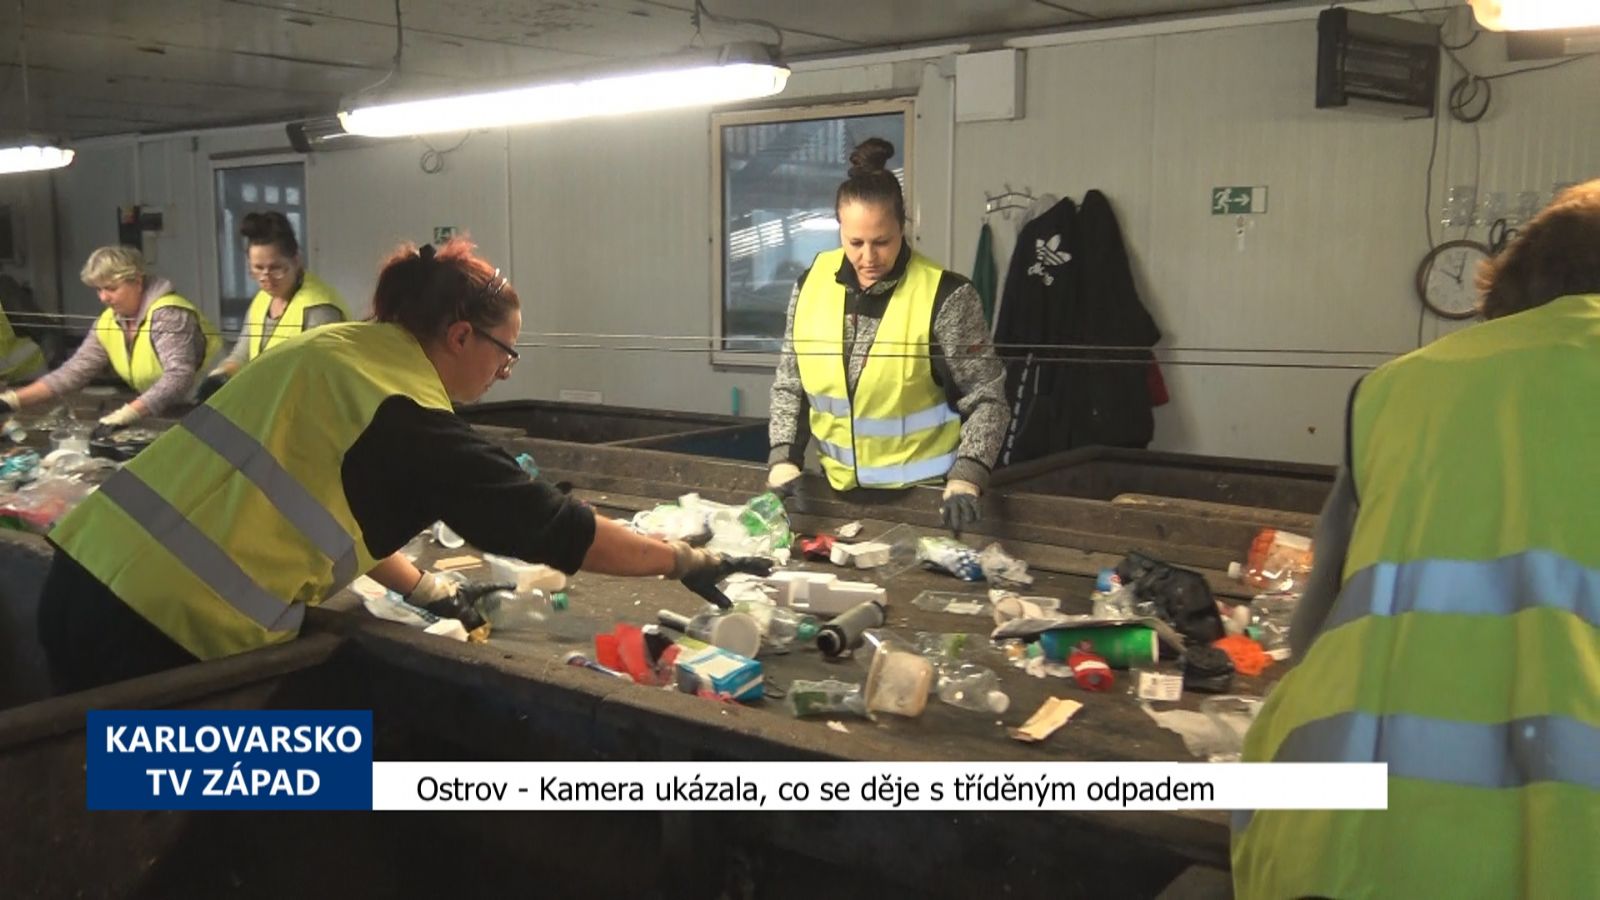 Ostrov: Kamera ukázala, co se děje s tříděným odpadem (TV Západ)